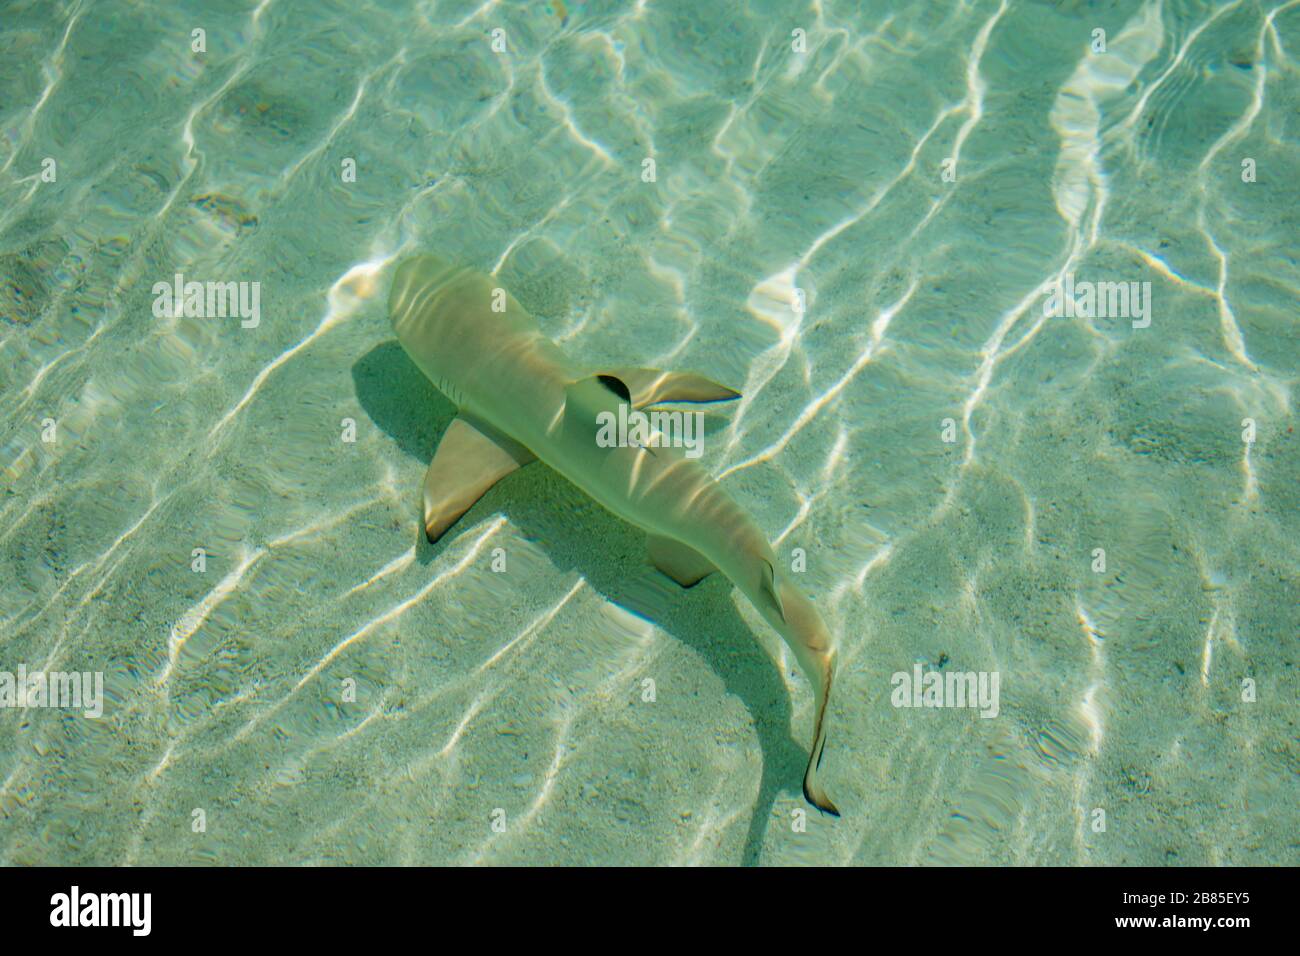 Maldive, atollo nord di Male - Dicembre 28 2019 - UN piccolo squalo di scogliera a punta nera nuota nelle acque cristalline Foto Stock